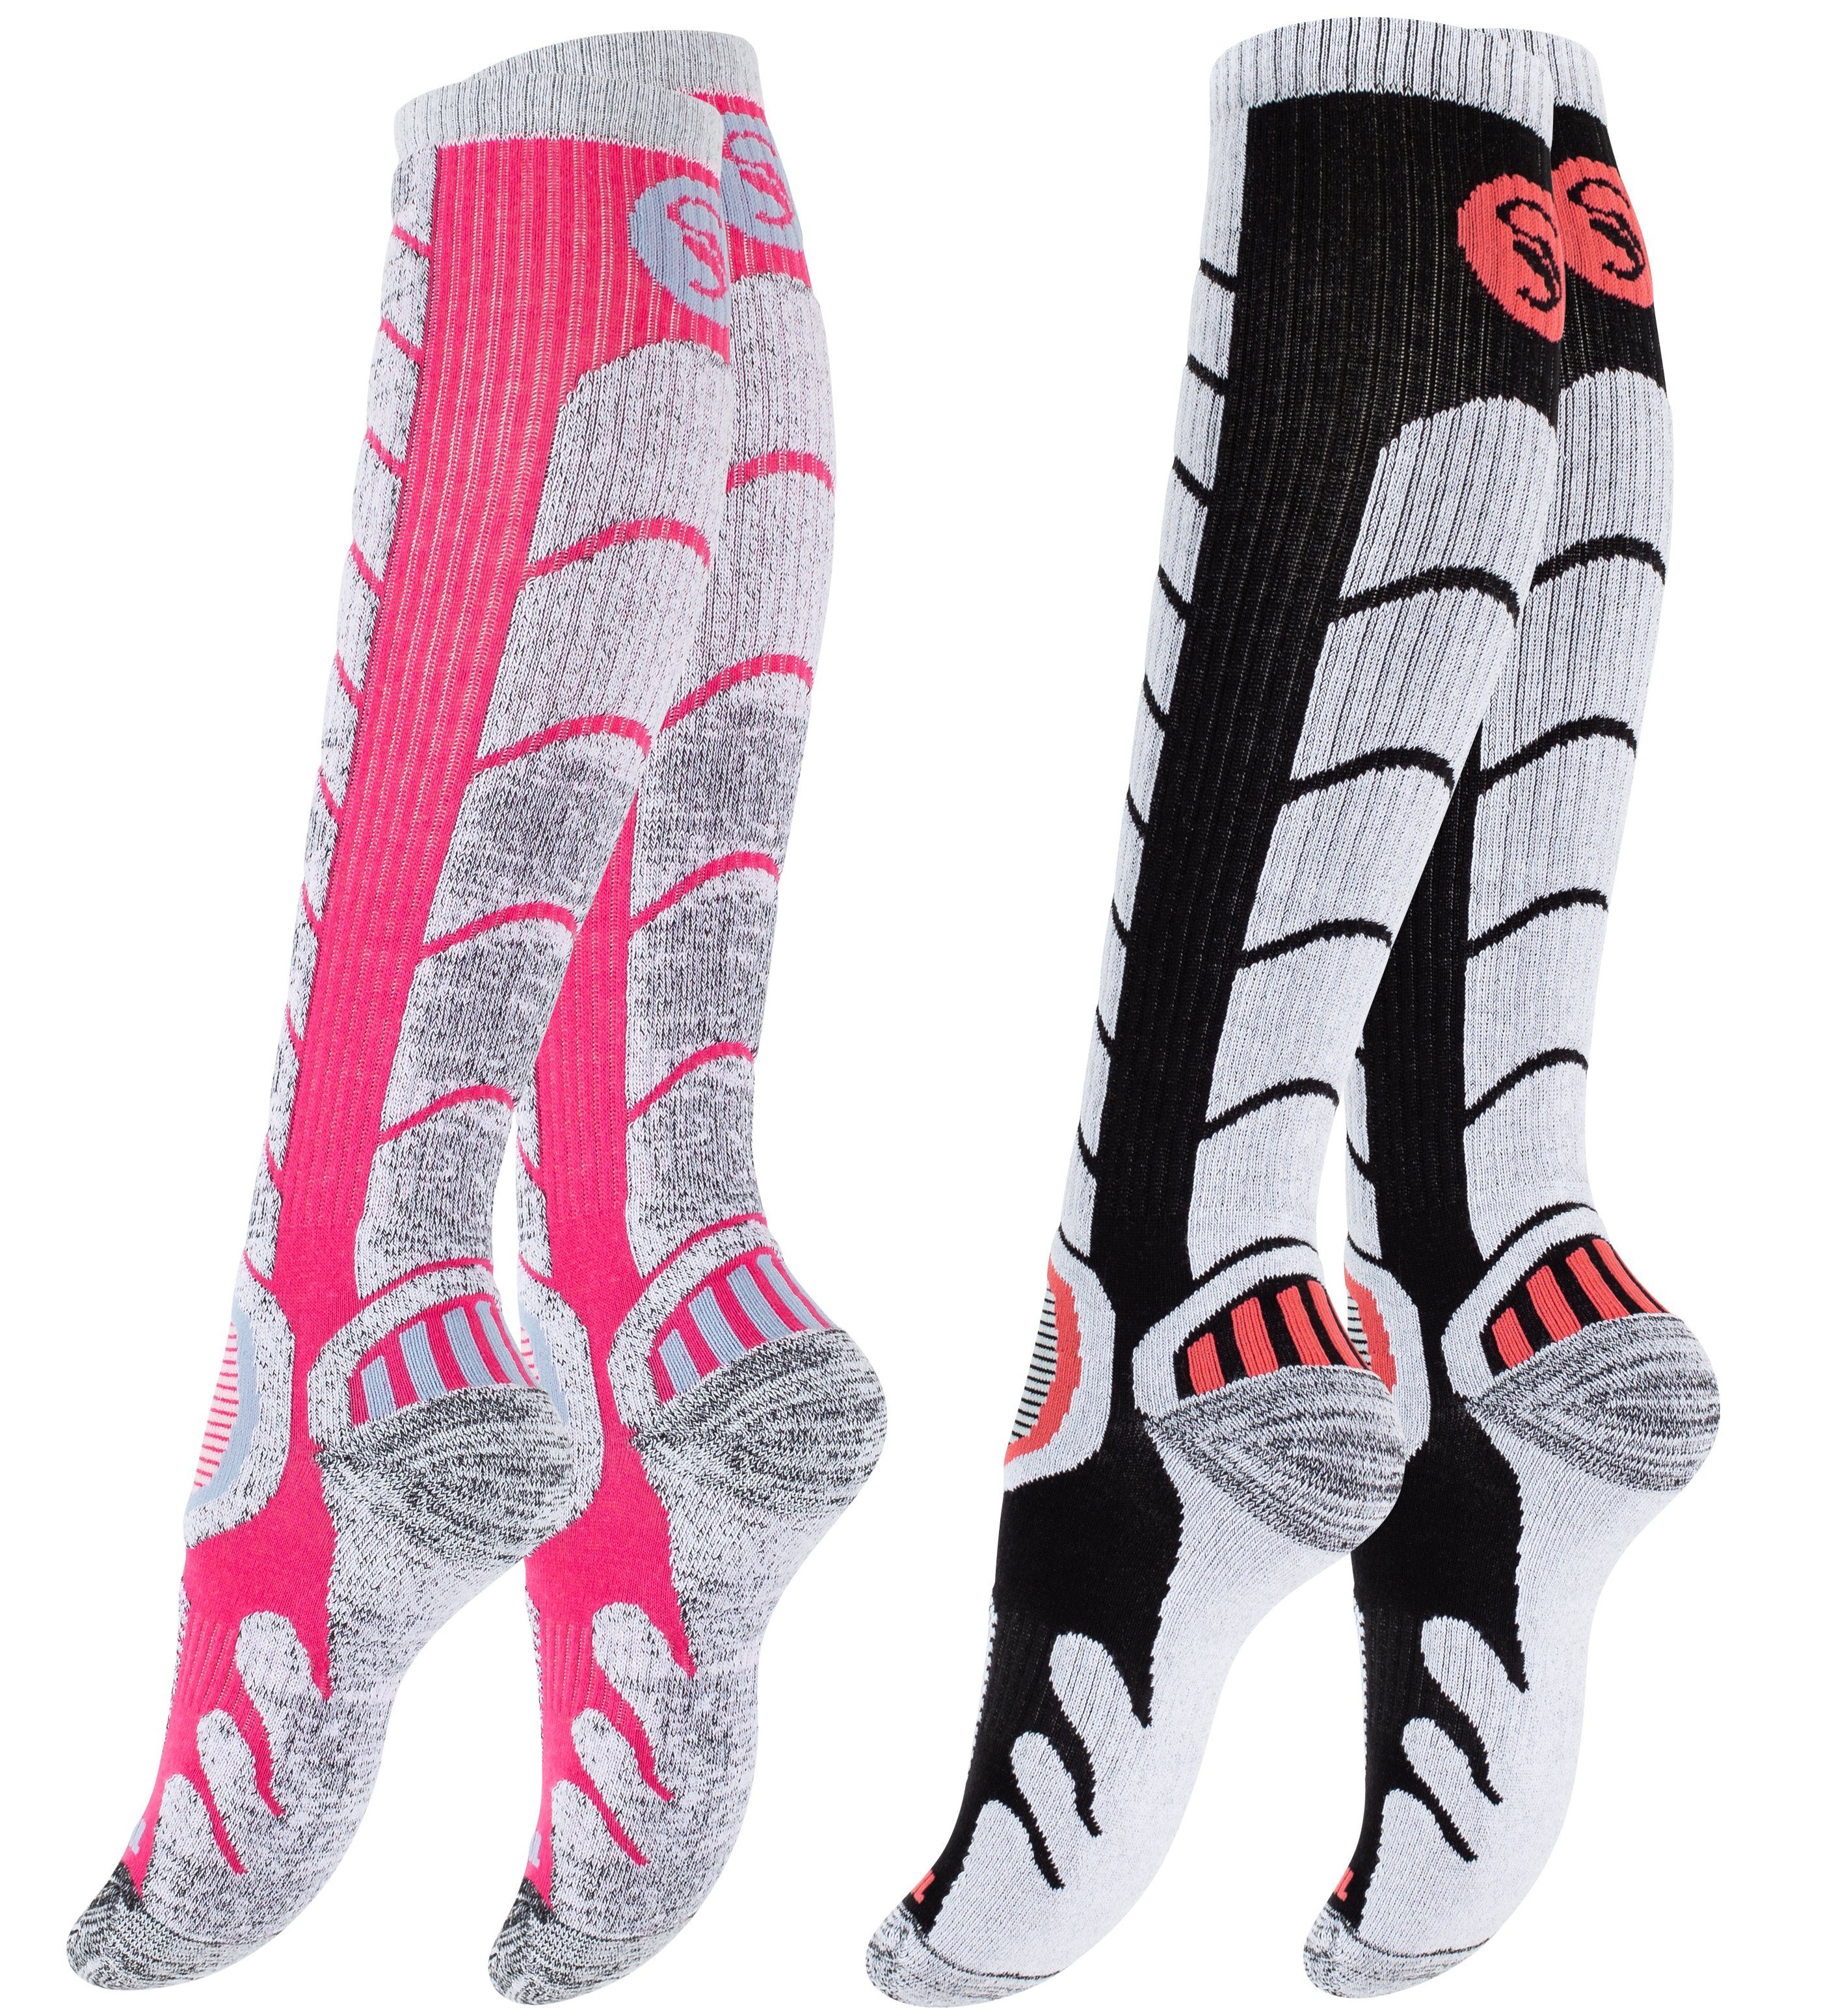 Skisocken Paar 2 Ski mit Stark Snowboard Paar & 2 Spezialpolsterung, Soul® Schwarz/Pink Socken